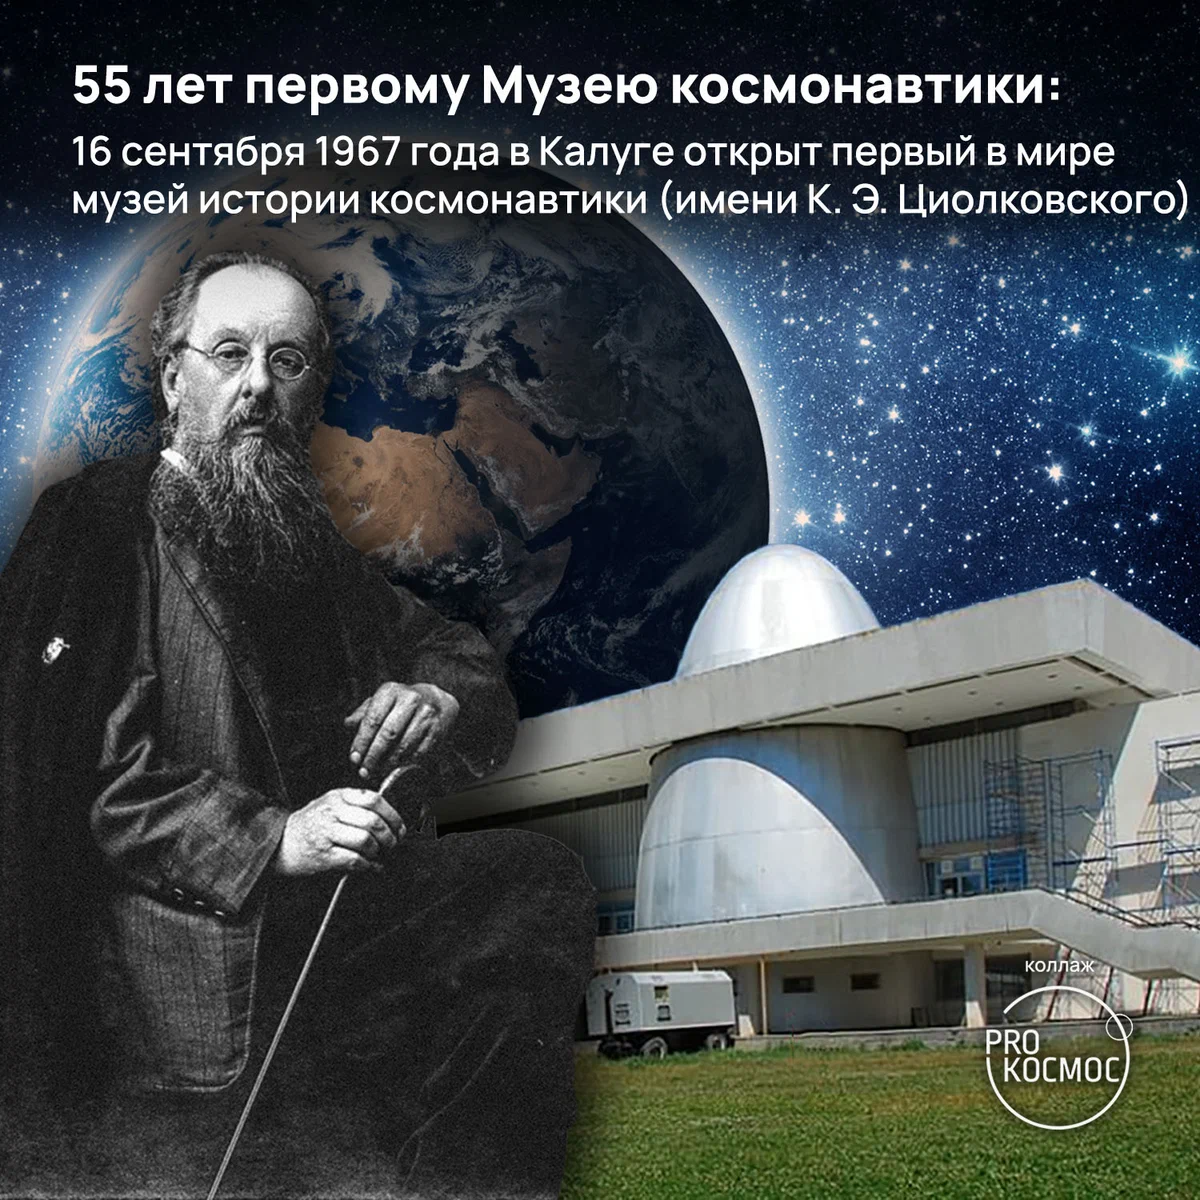 55 лет первому Музею космонавтики: 16 сентября 1967 года в Калуге открыт первый в мире музей истории космонавтики (имени К. Э. Циолковского) height=1200px width=1200px